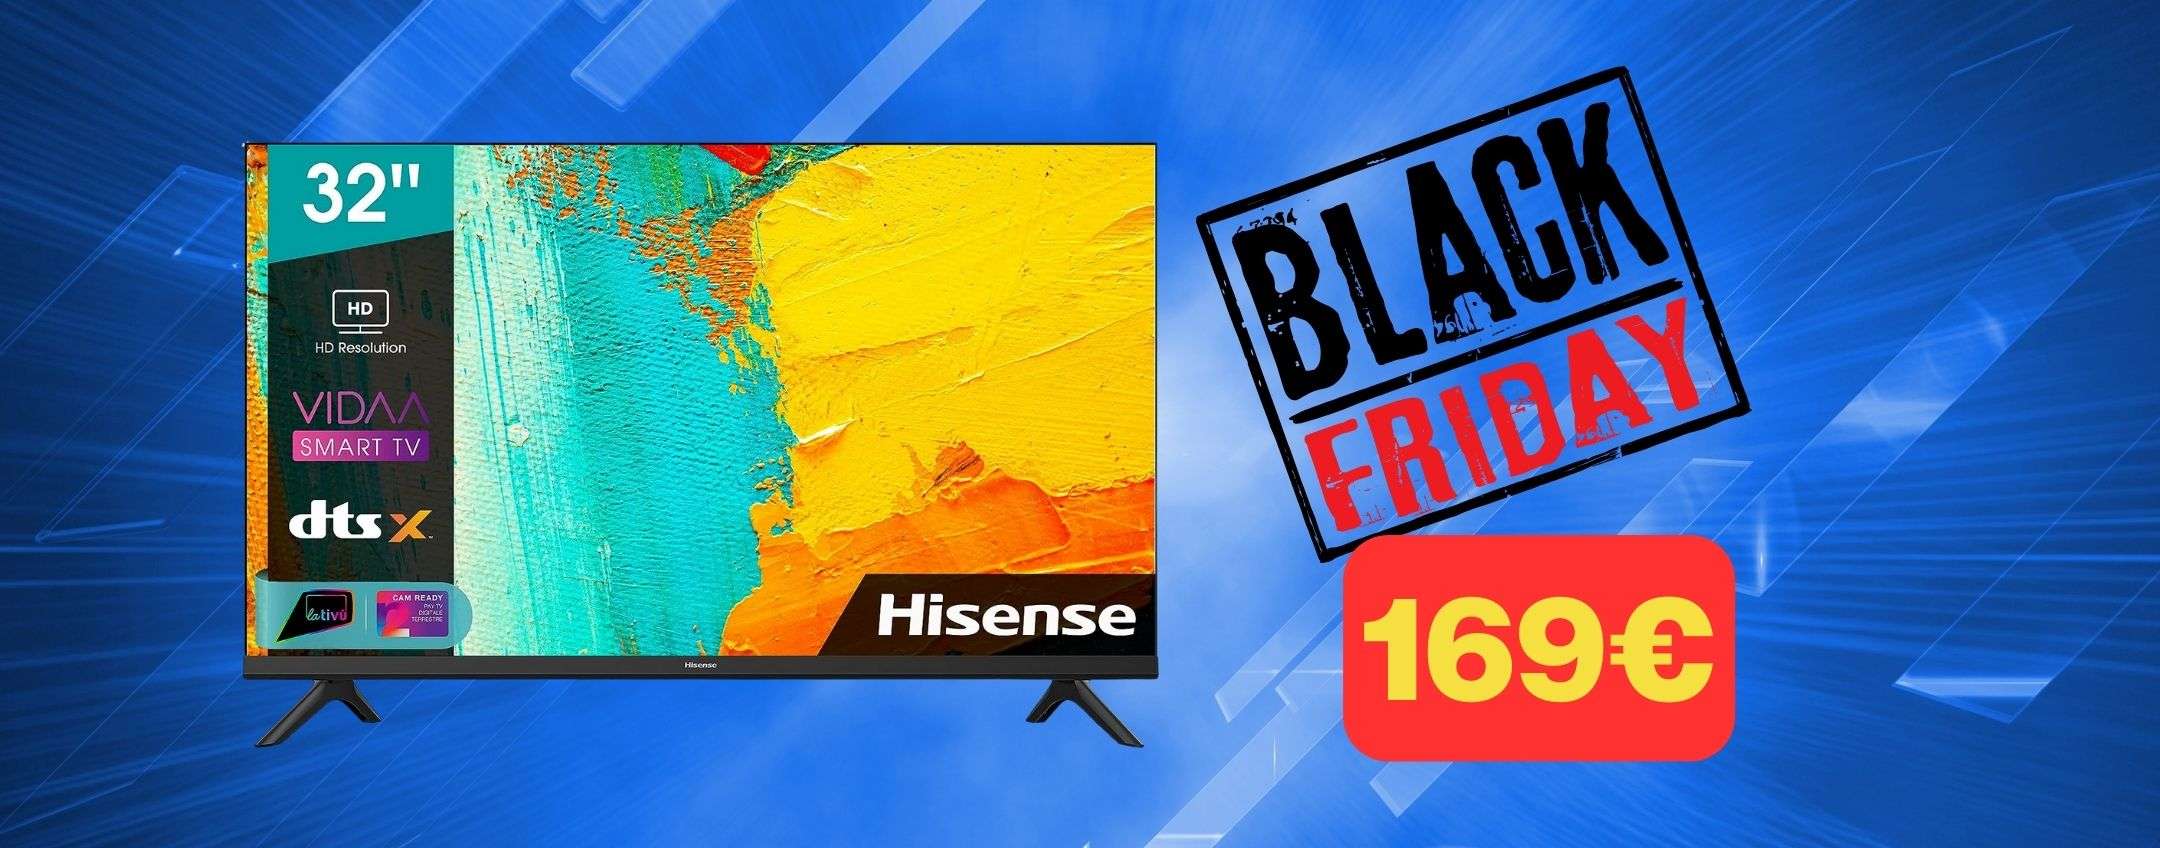 Smart TV Hisense 32 a soli 169€: è il Black Friday